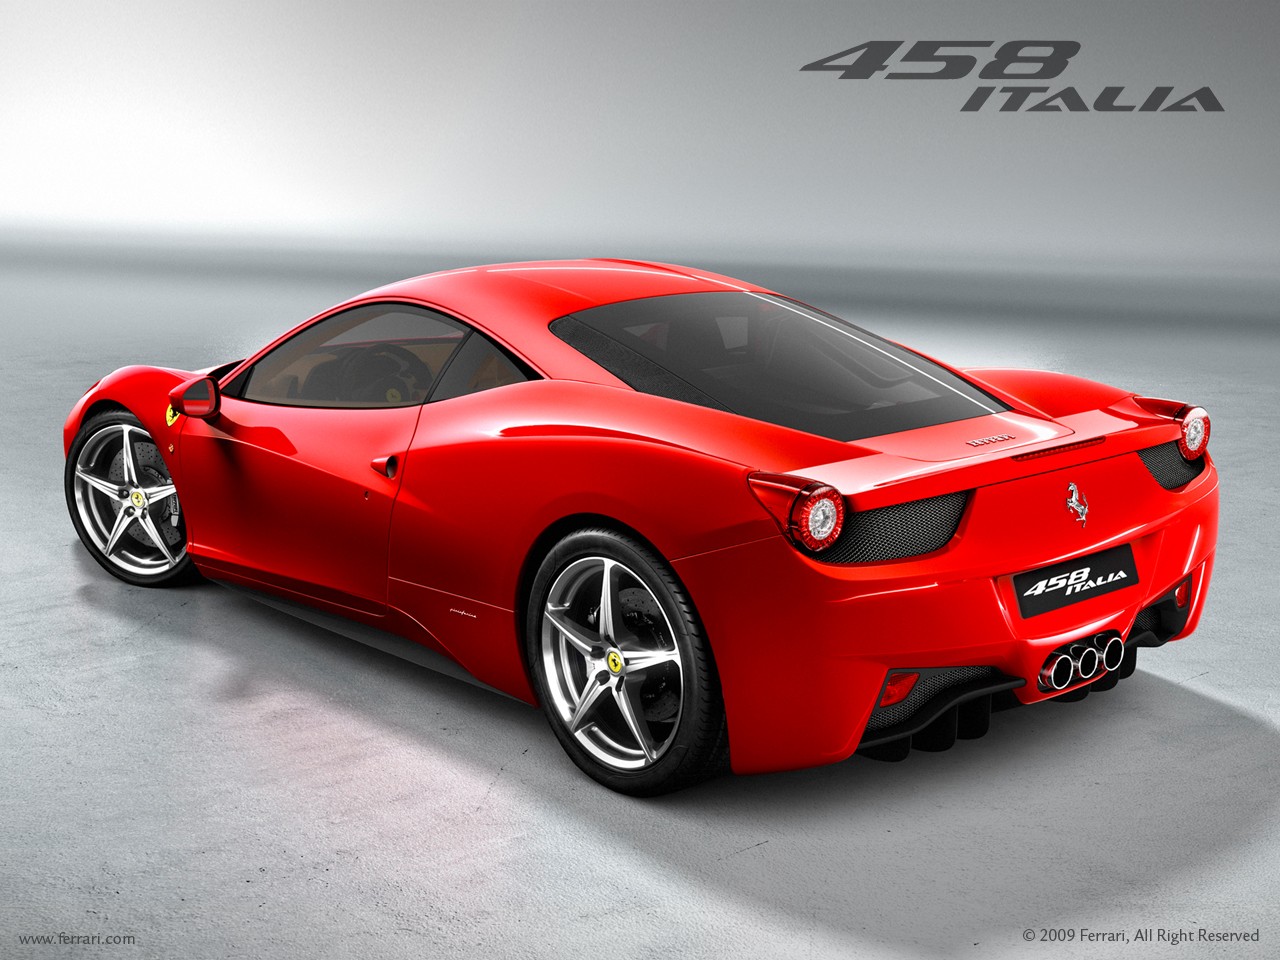 Voitures et automobiles: Ferrari 458 Italia